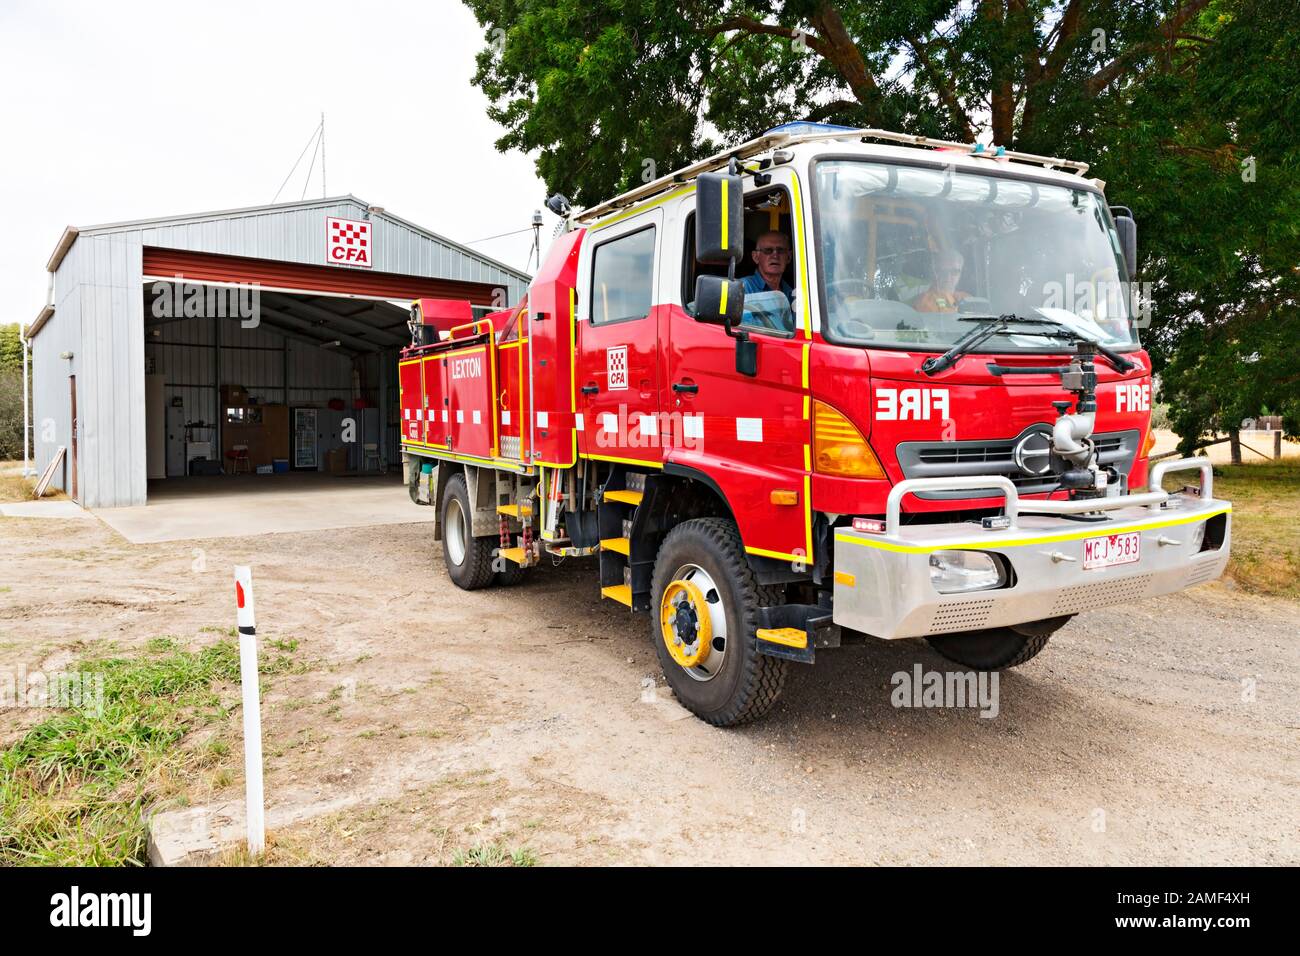 Lexton Australia/Lexton Country Fire Authority (CFA) Fire Tanker in Lexton Victoria Australia. Stockfoto